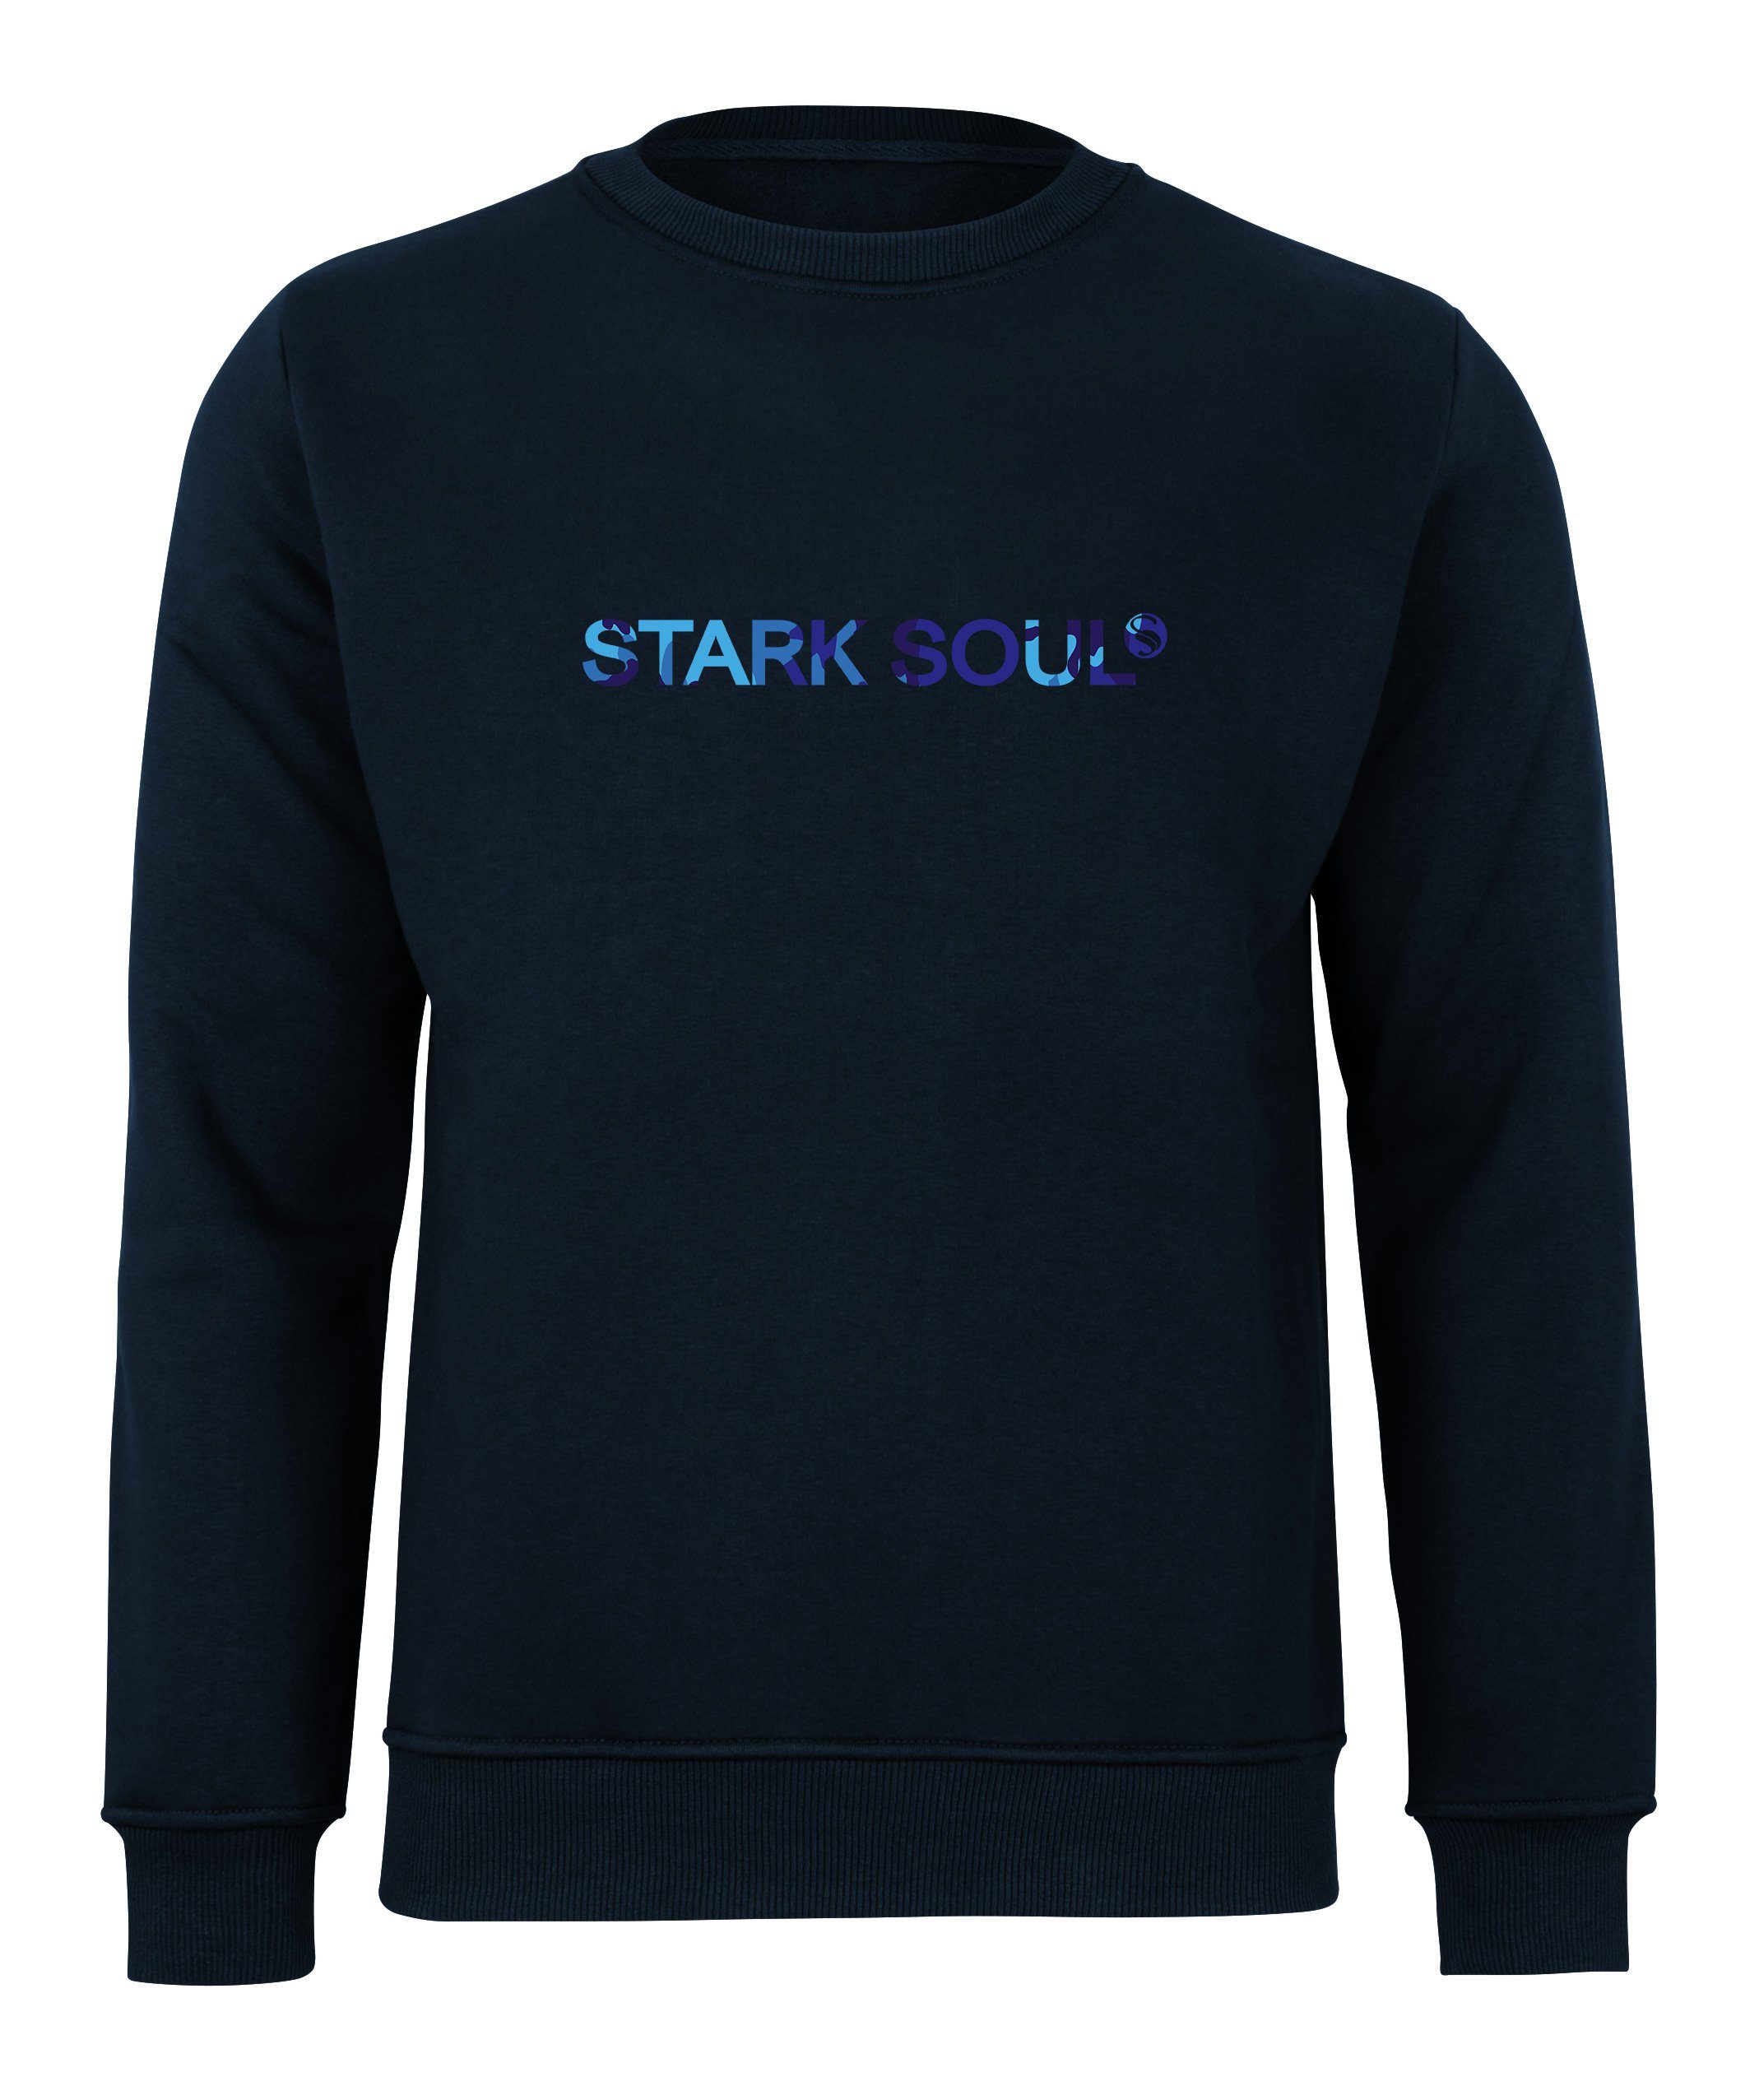 Stark Soul® Sweatshirt French-Terry-Rundhals-Sweatshirt, Innen angeraut mit "Stark Soul®"-Schriftzug in Camouflage-Optik Marine-Blau